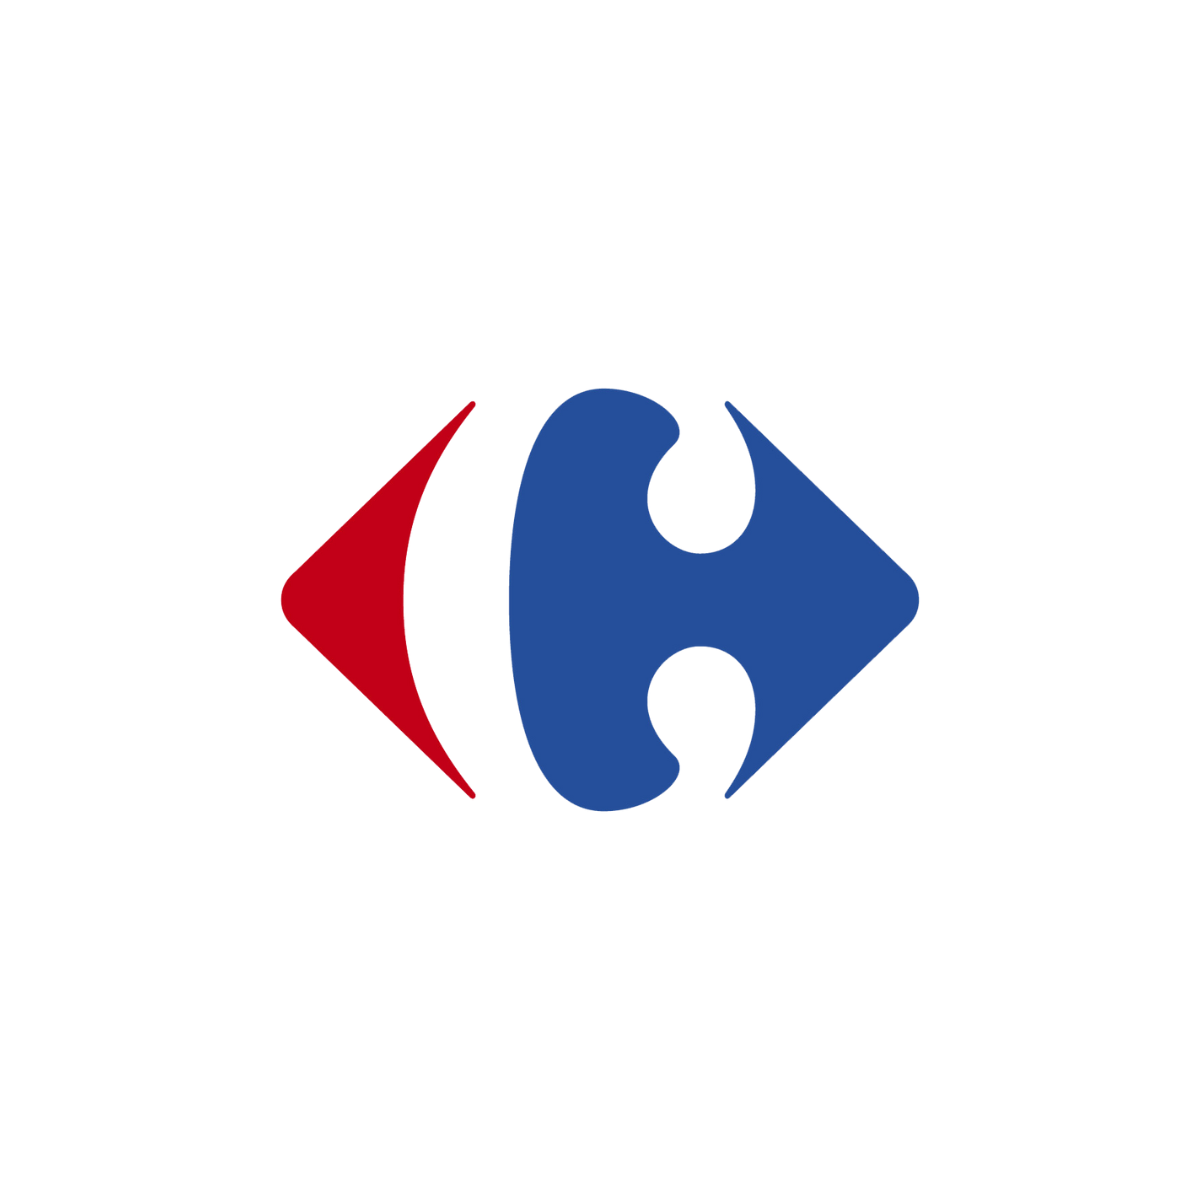 Le logo de Carrefour est affiché ici pour mettre en avant son partenariat avec AKTISEA dans l'optimisation de la politique handicap de l'entreprise. Chez AKTISEA, entreprise adaptée, nous sommes engagés pour plus d'inclusion.